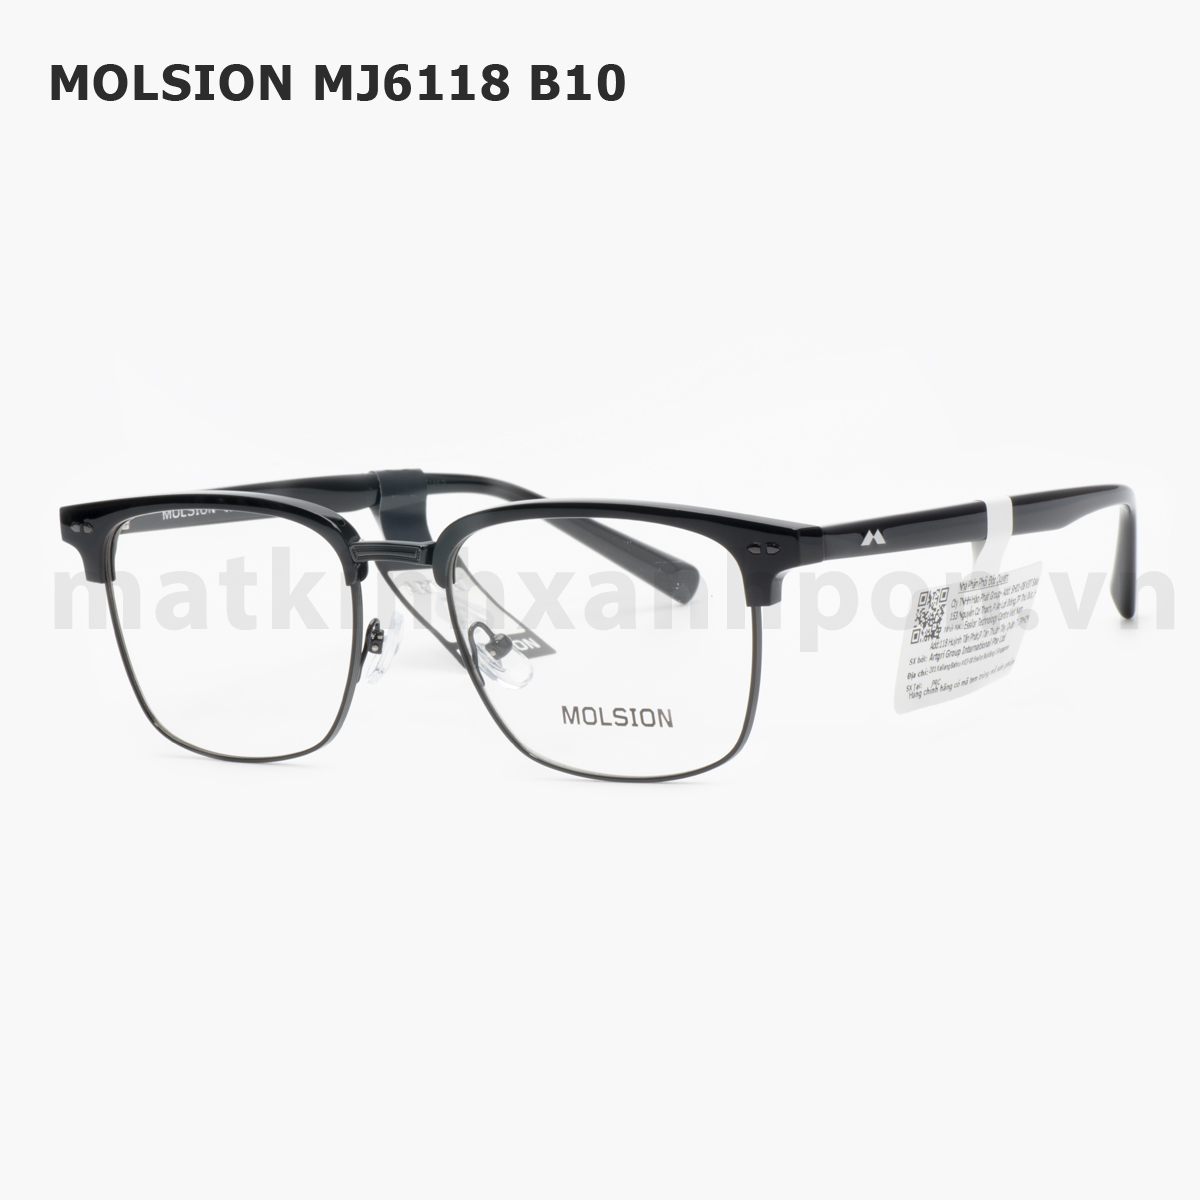 Molsion MJ6118 B10